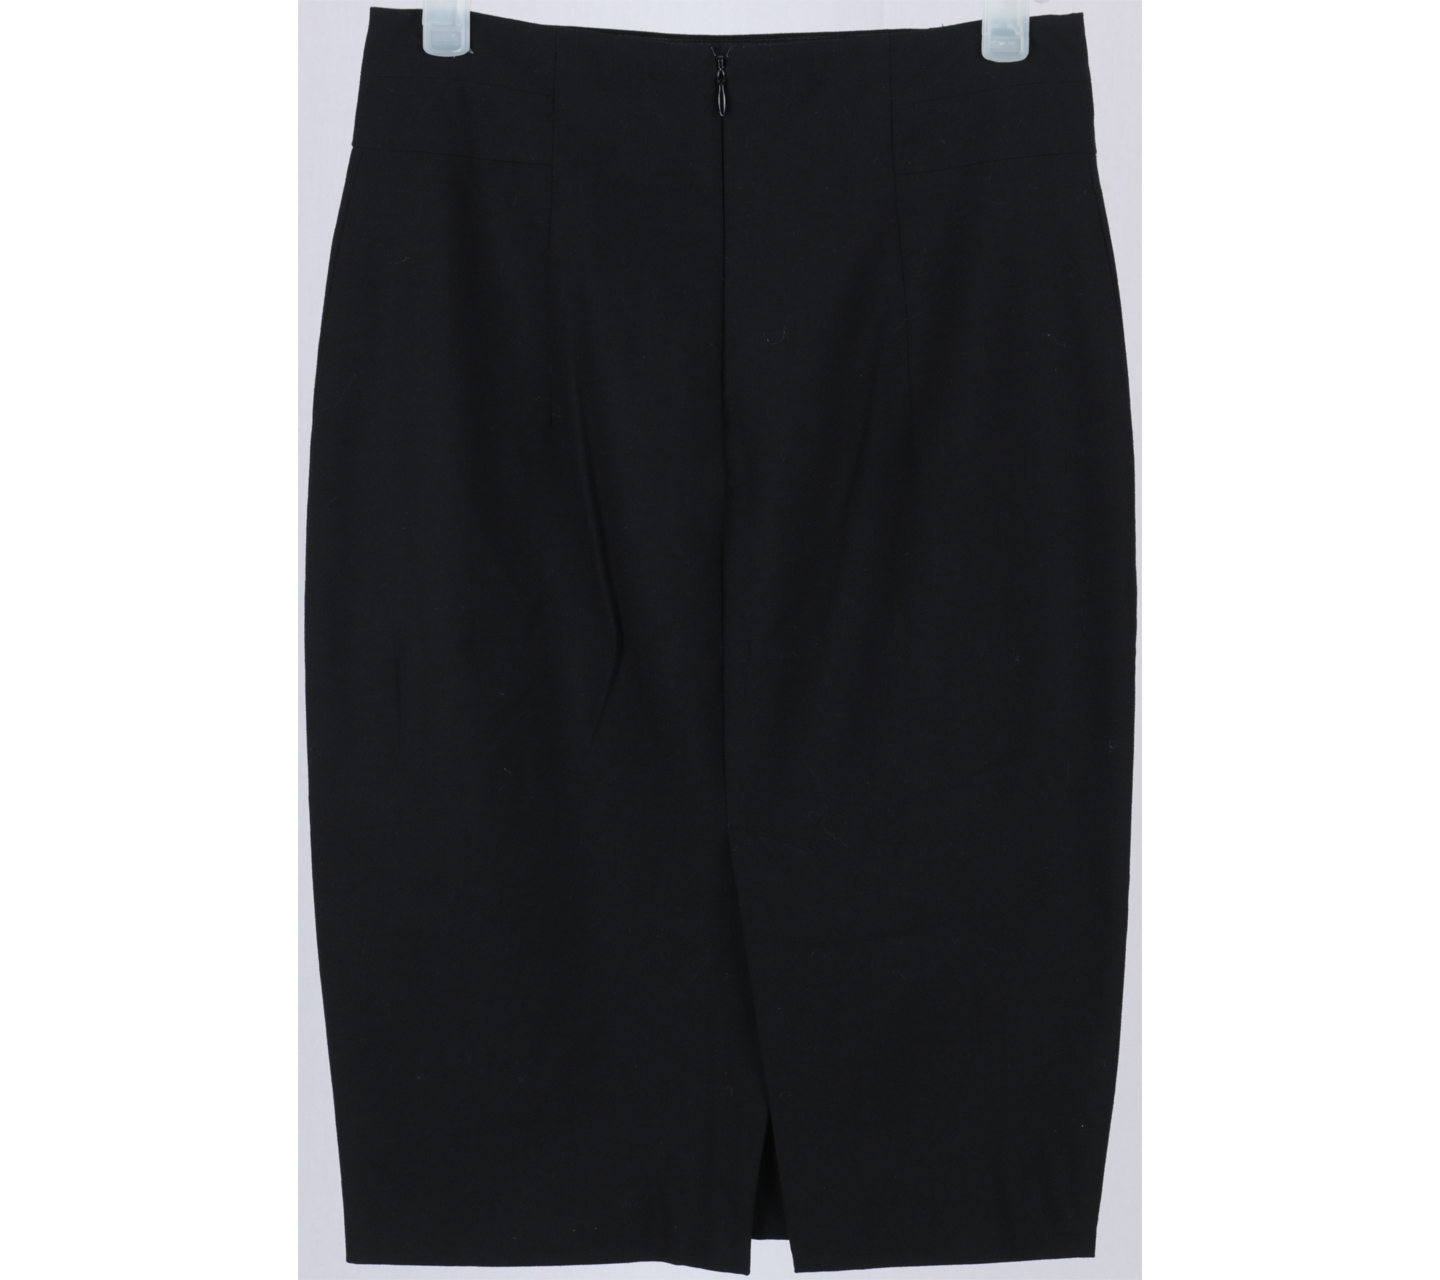 Zara Black Skirt